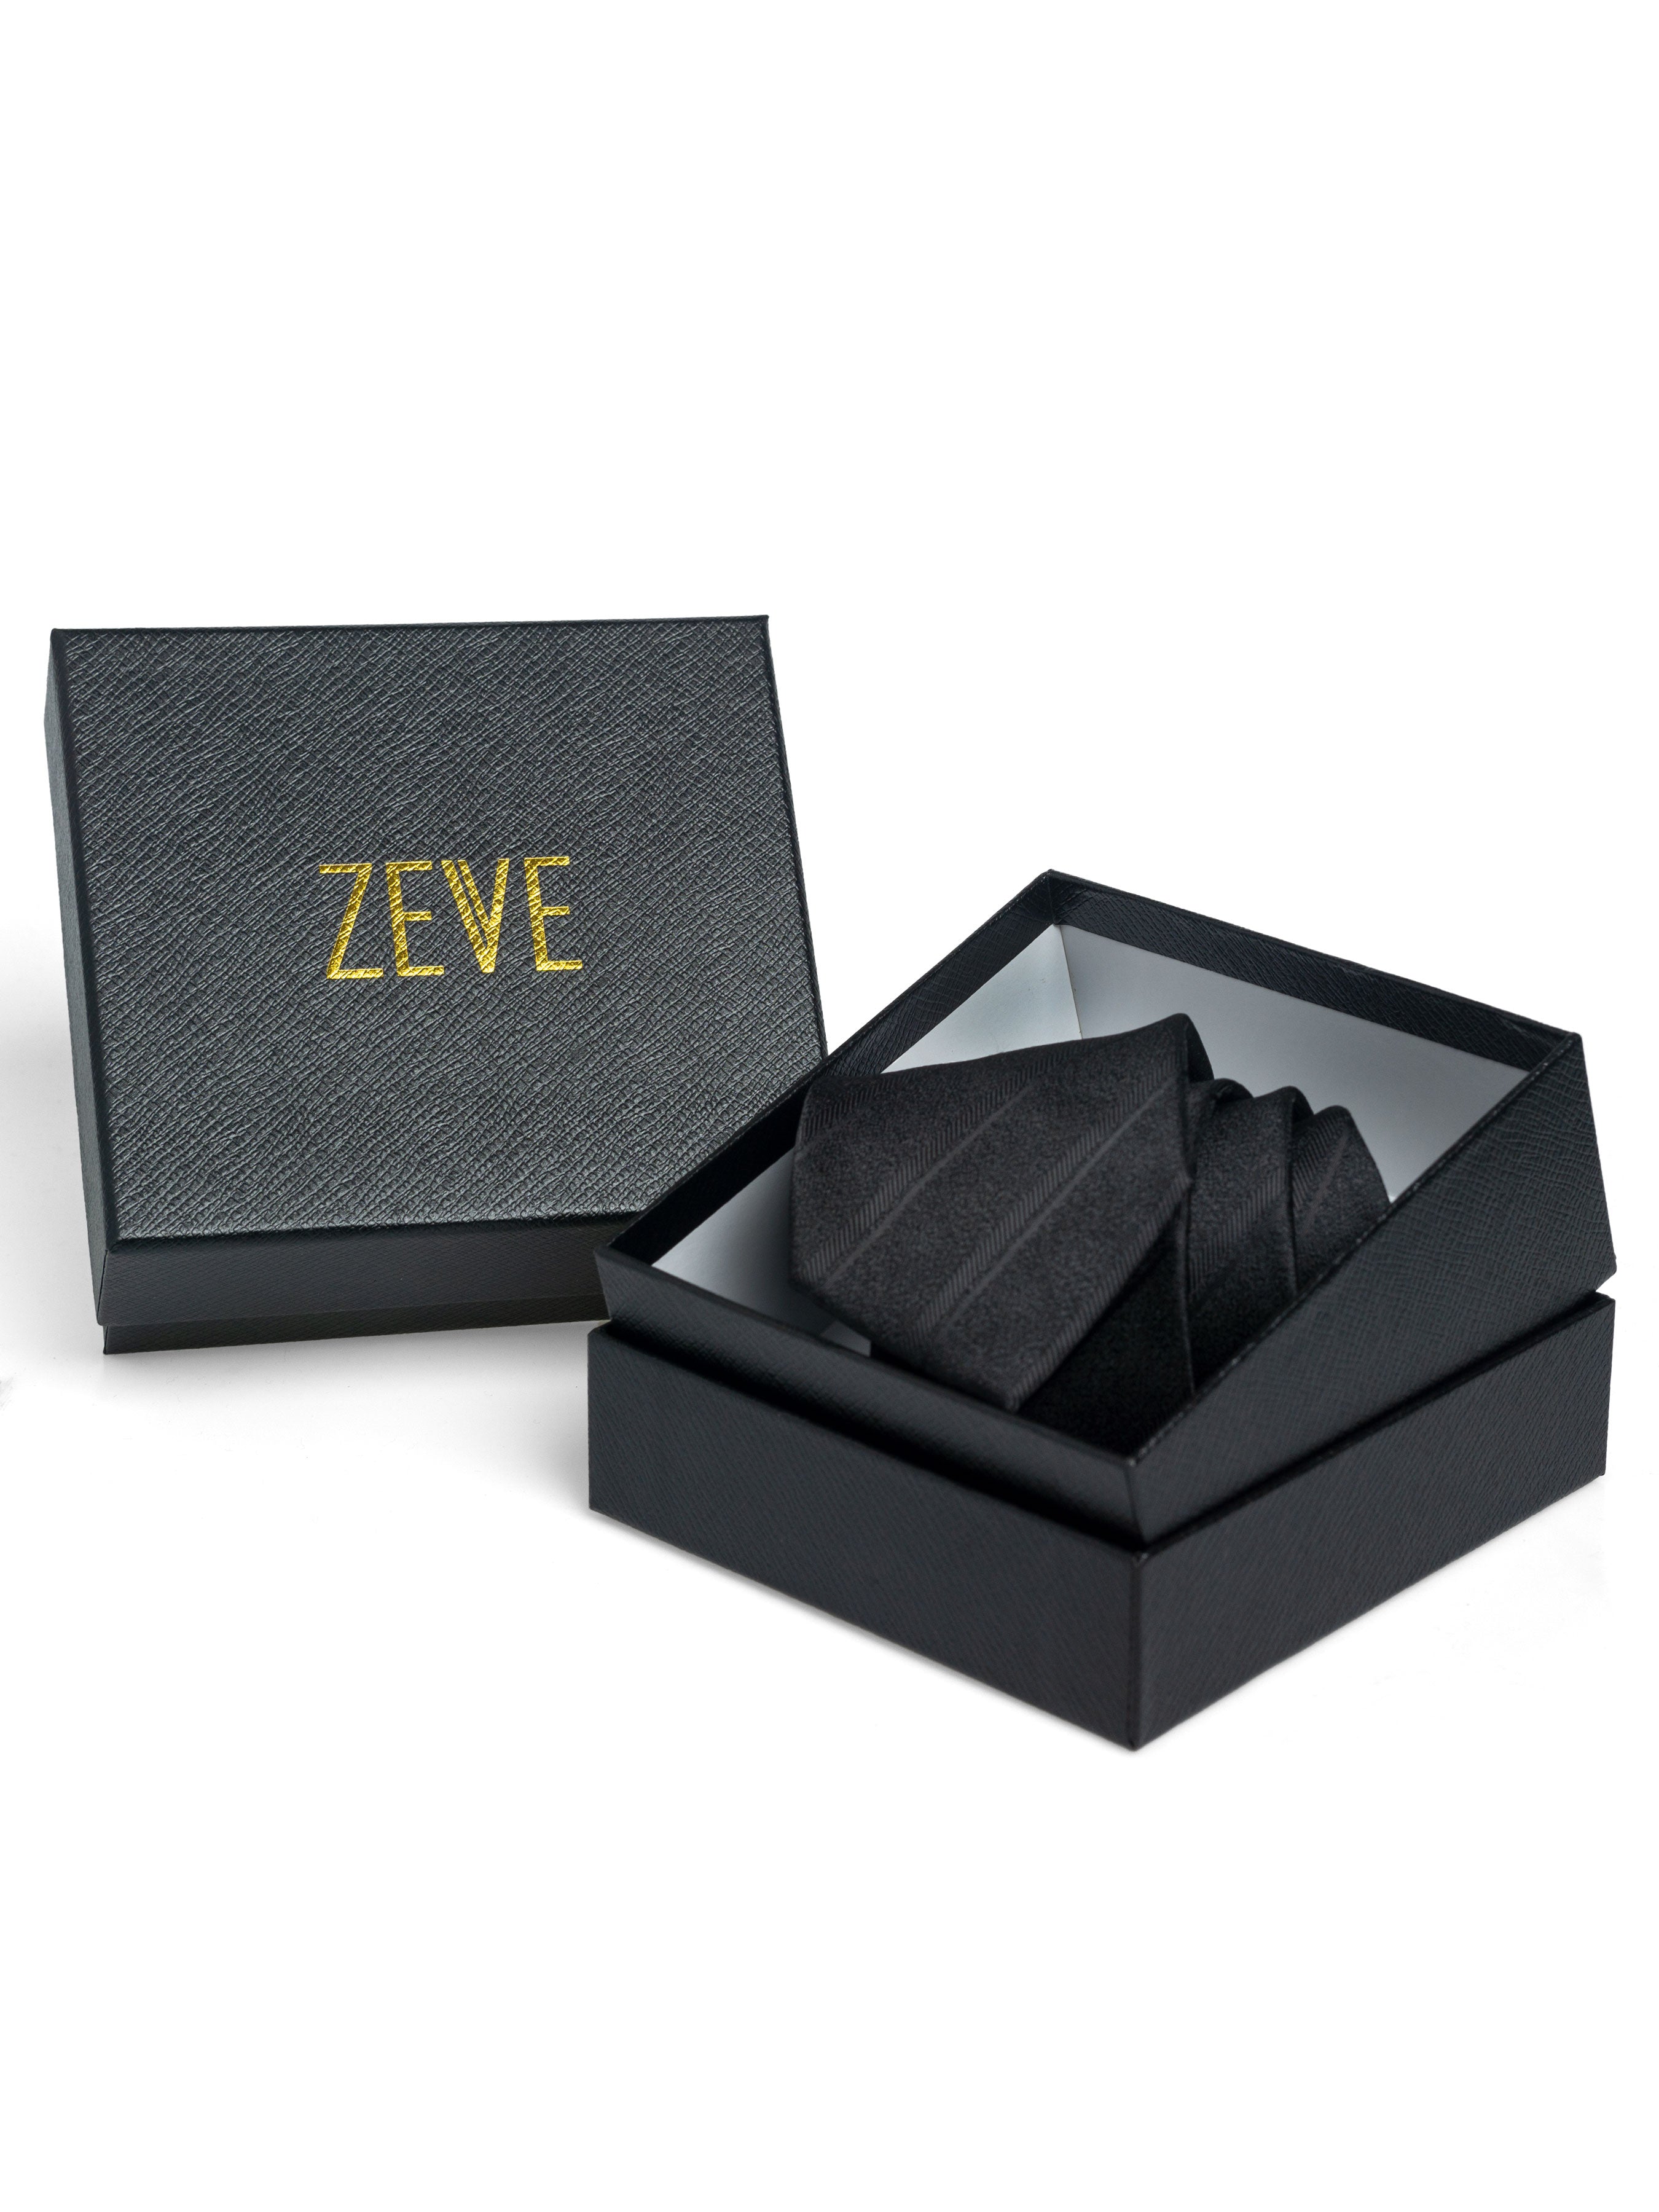 Mini Polka Dot Tie - Black - Zeve Shoes